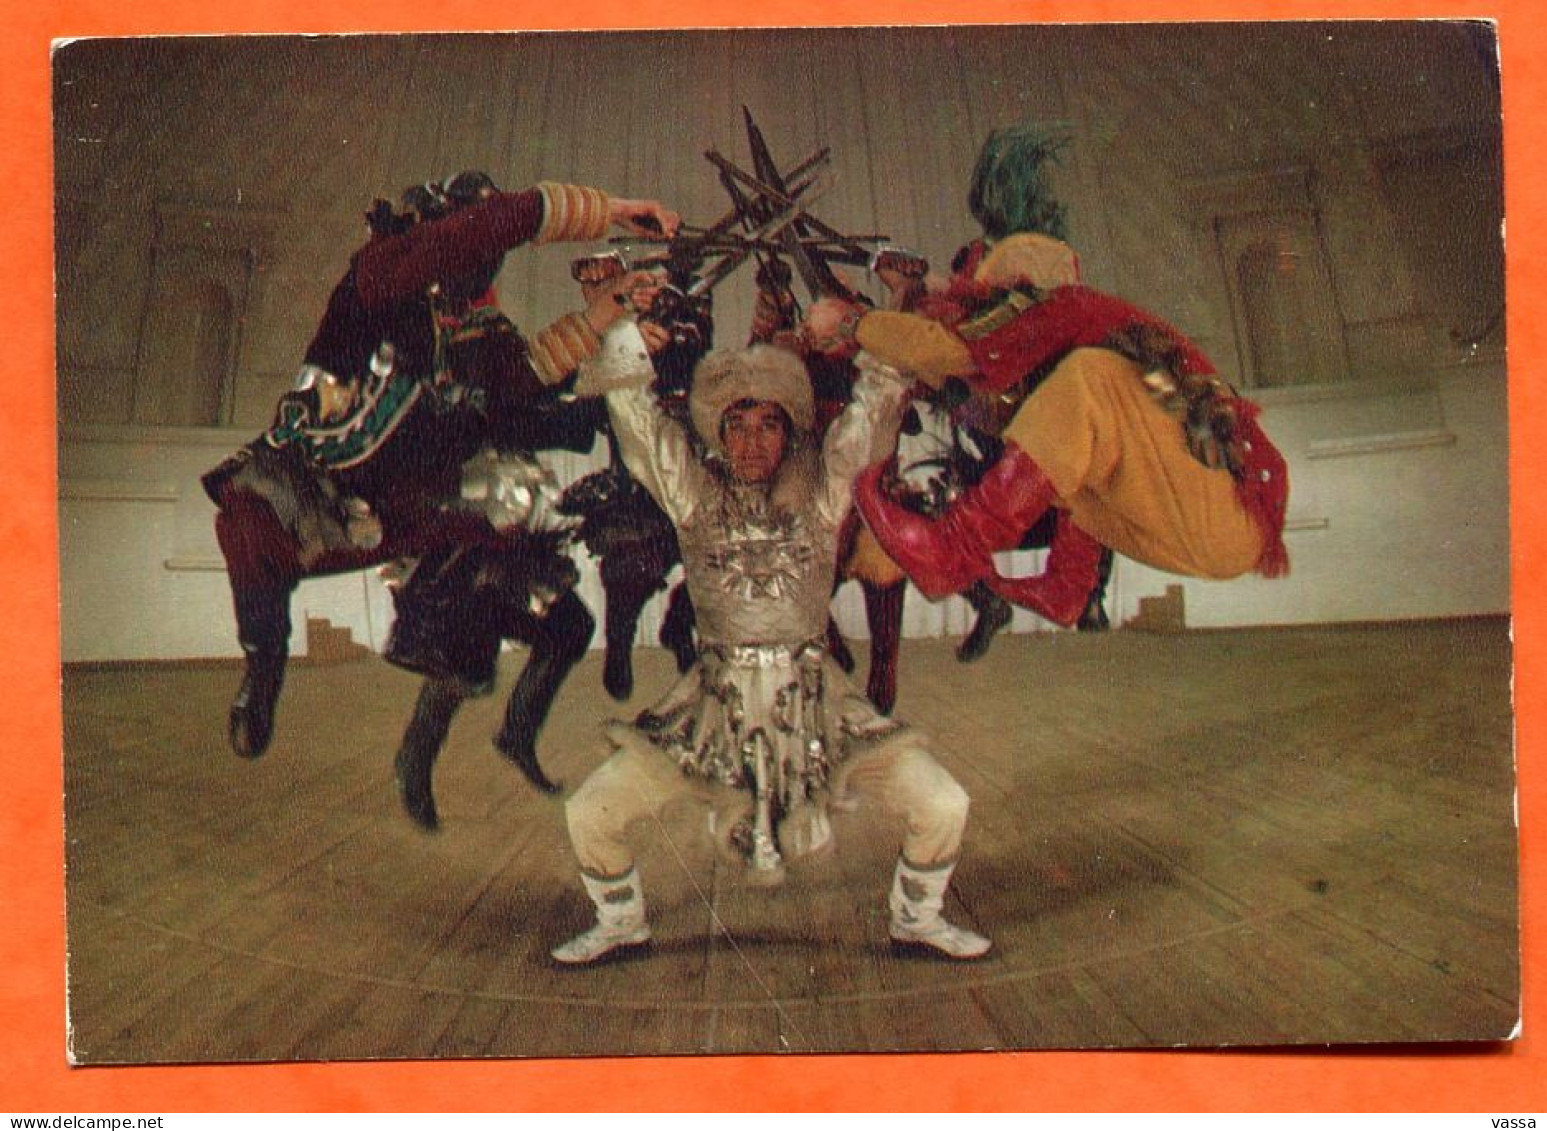 Mangolian Tsam Pantomime - MONGOLIA - Dance - Mongolia